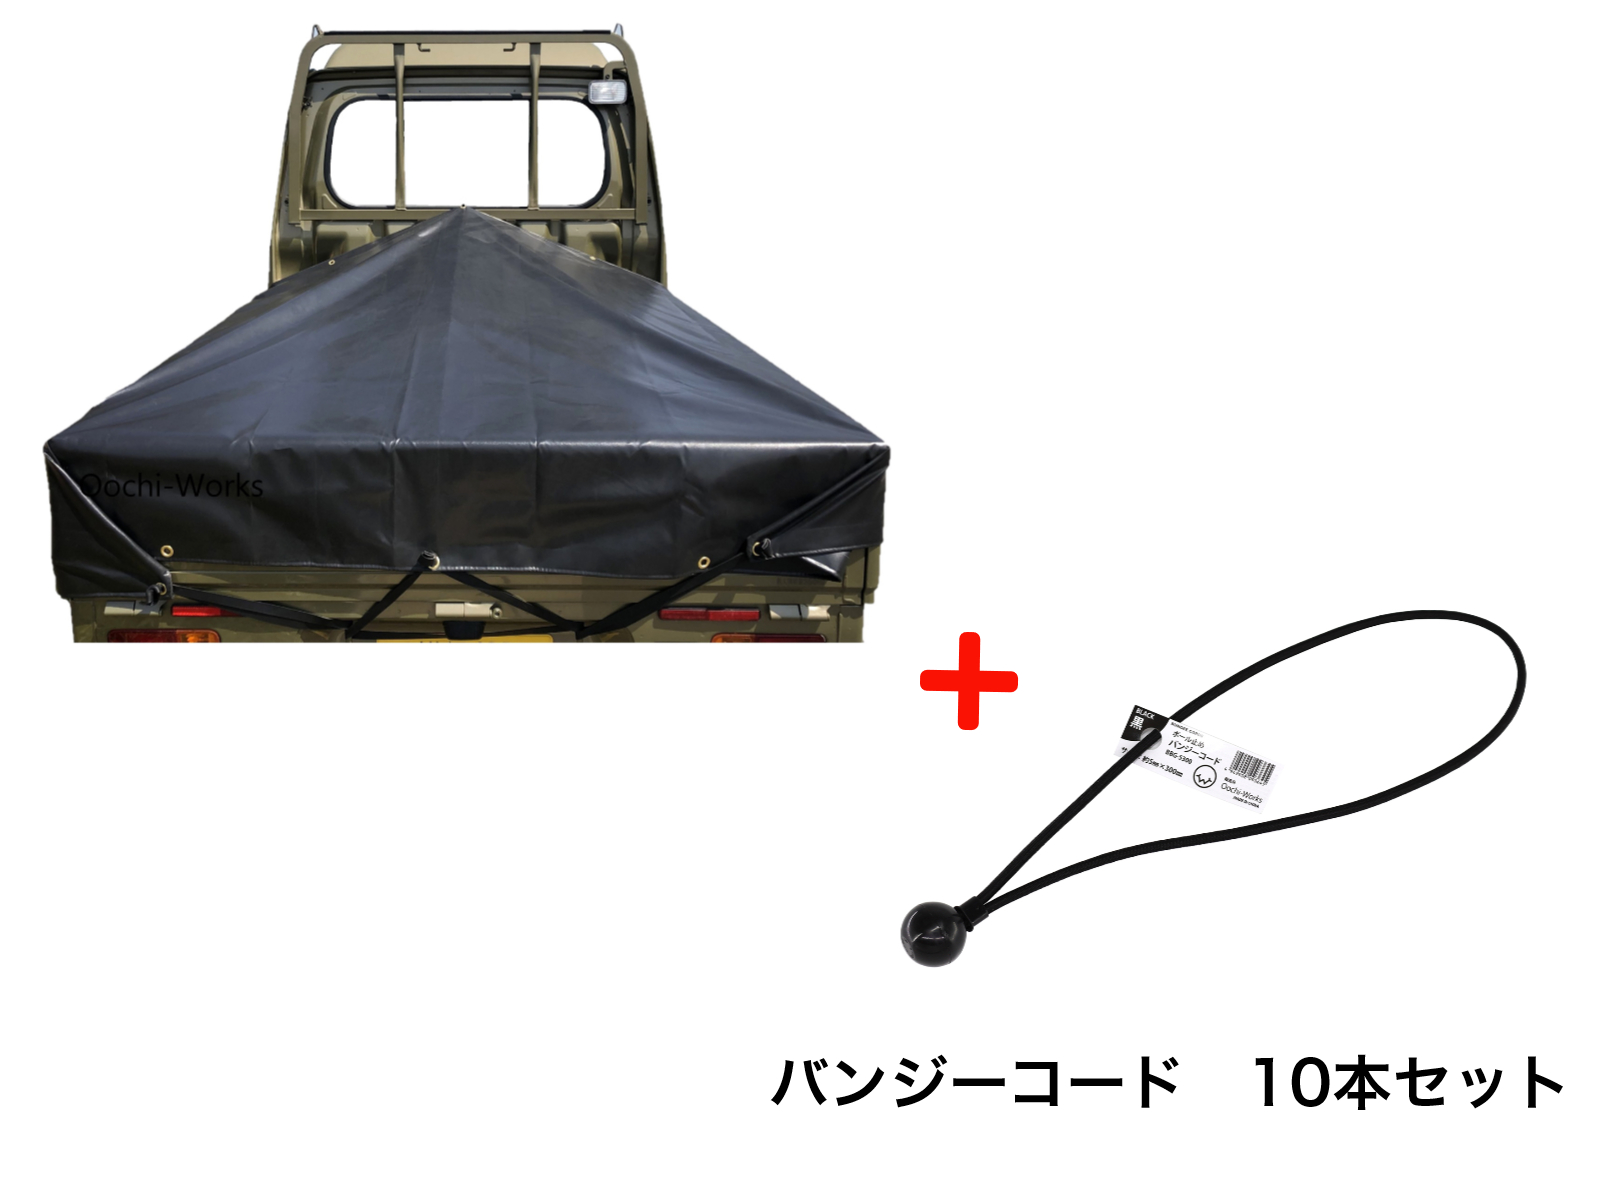 バンジーコード 10本付 ハイゼットジャンボシート スロープ型 シート単品 ブラック (前部)2.0m・(後部)1.9m×(長さ)1.93m 台形シート